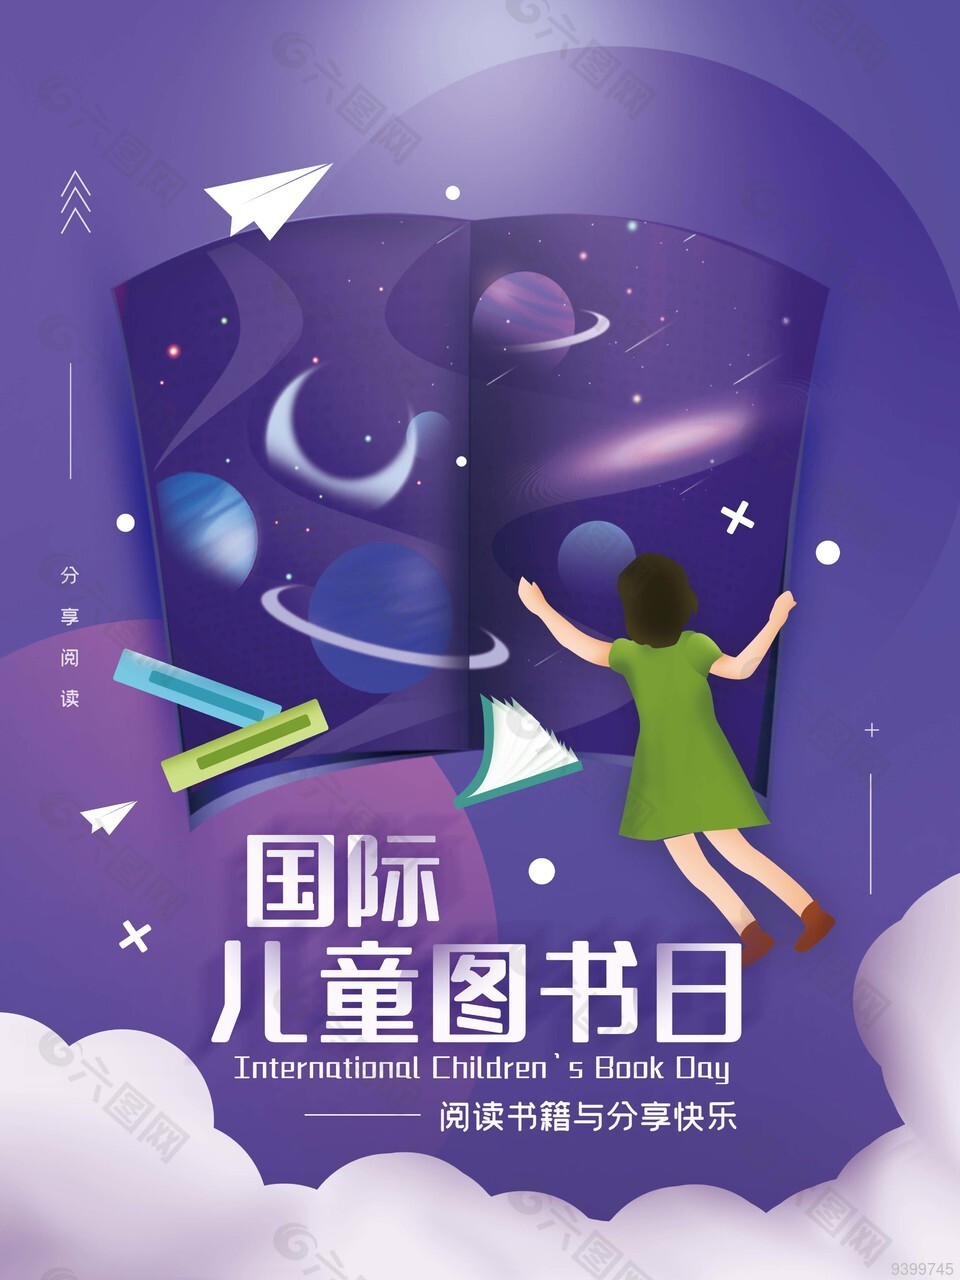 紫色国际儿童图书日宣传海报图片下载